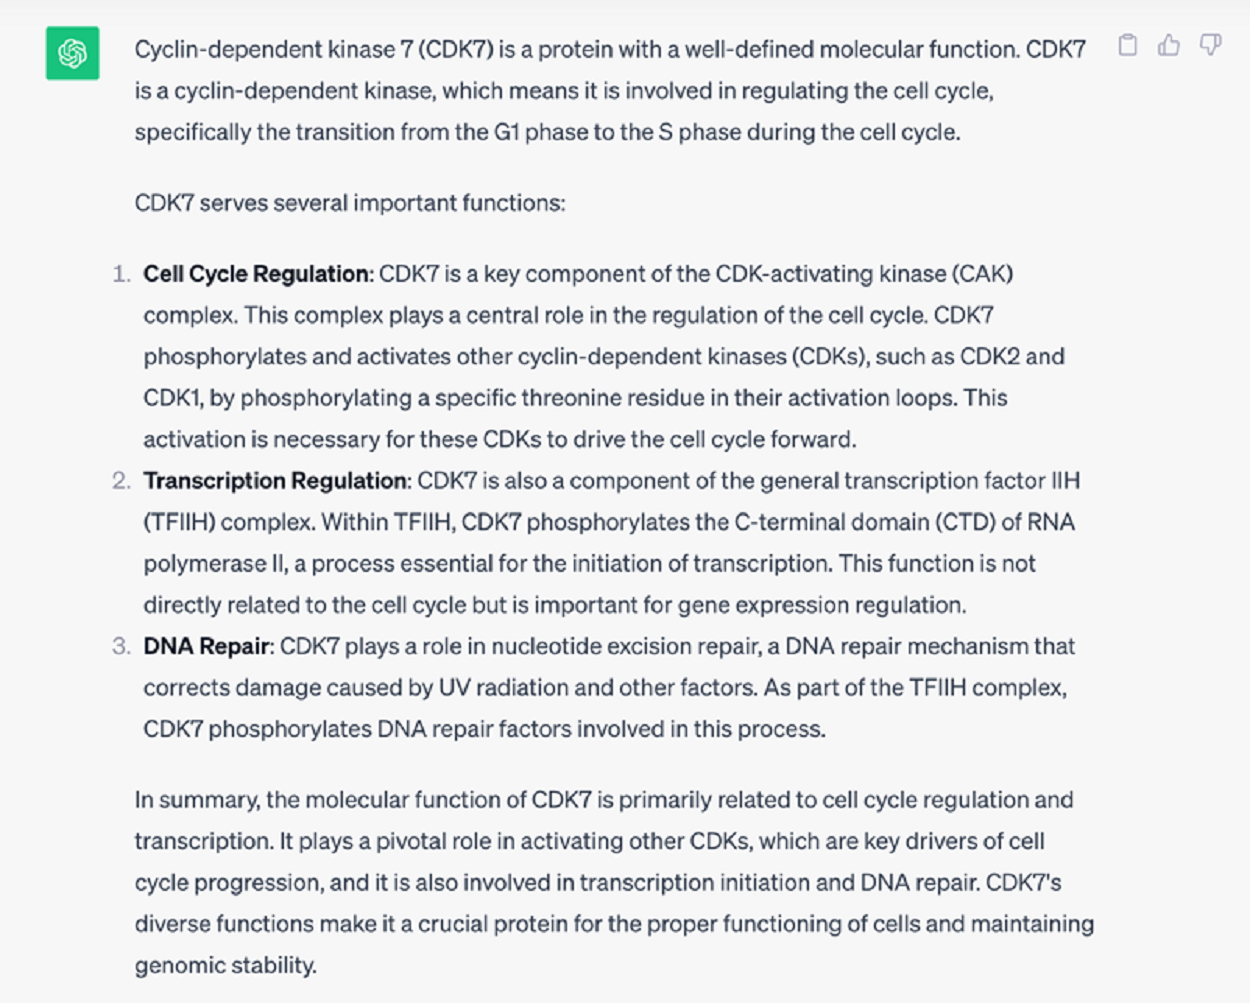 Вопрос к чату GPT: какую функцию выполняет белок CDK7? (Тут мы уже явно указали имя белка.)